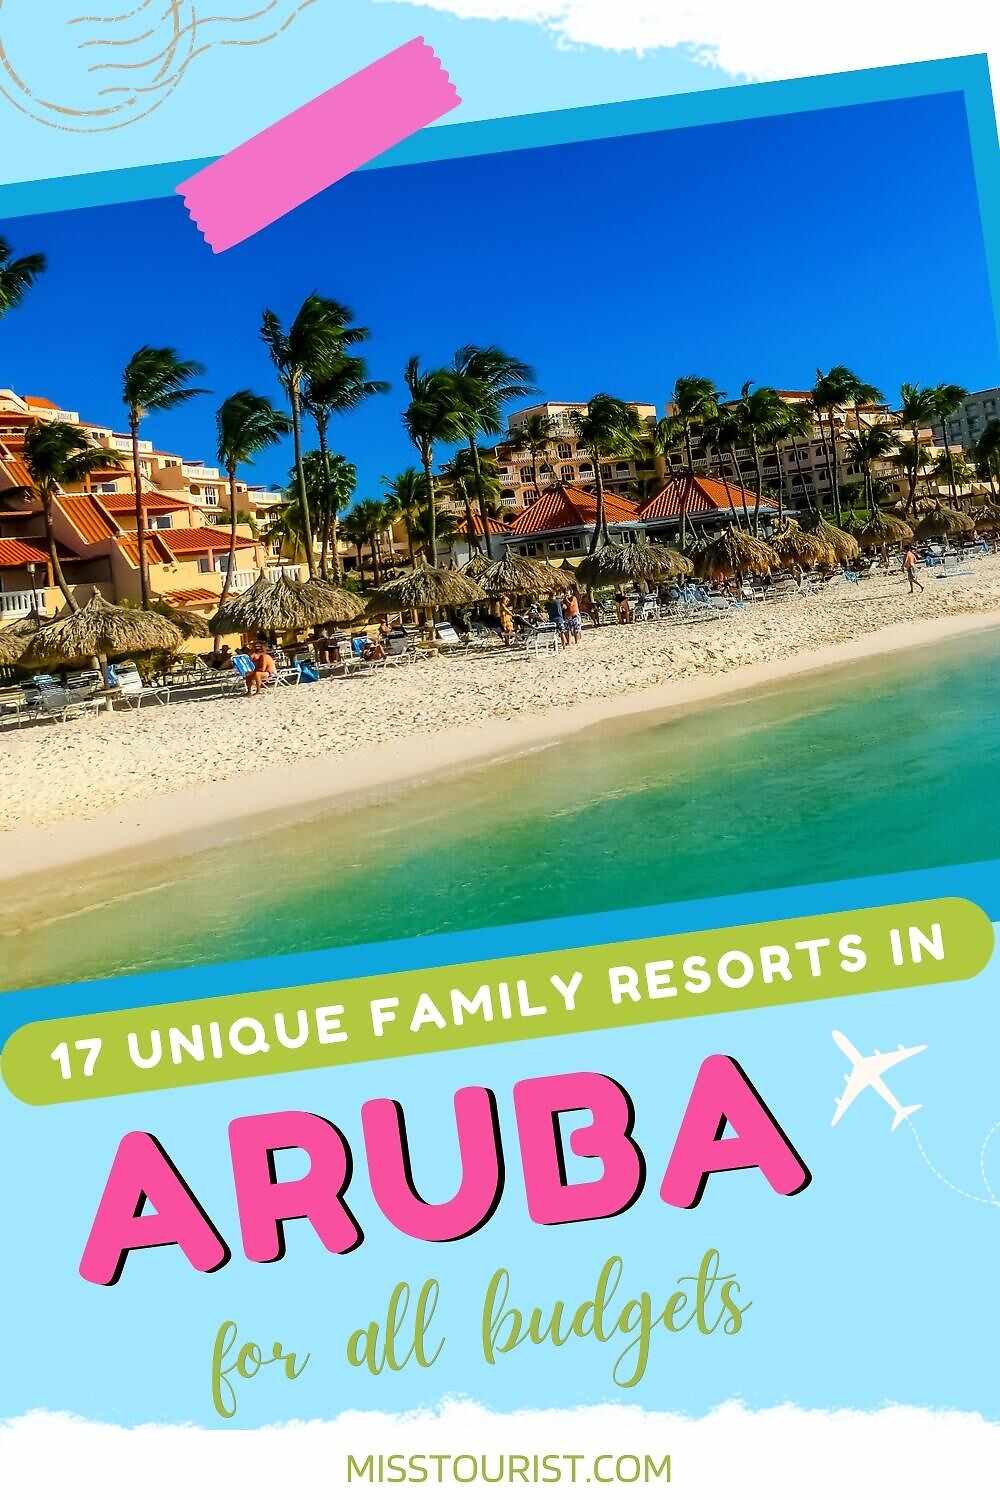 Resor keluarga Aruba PIN 1